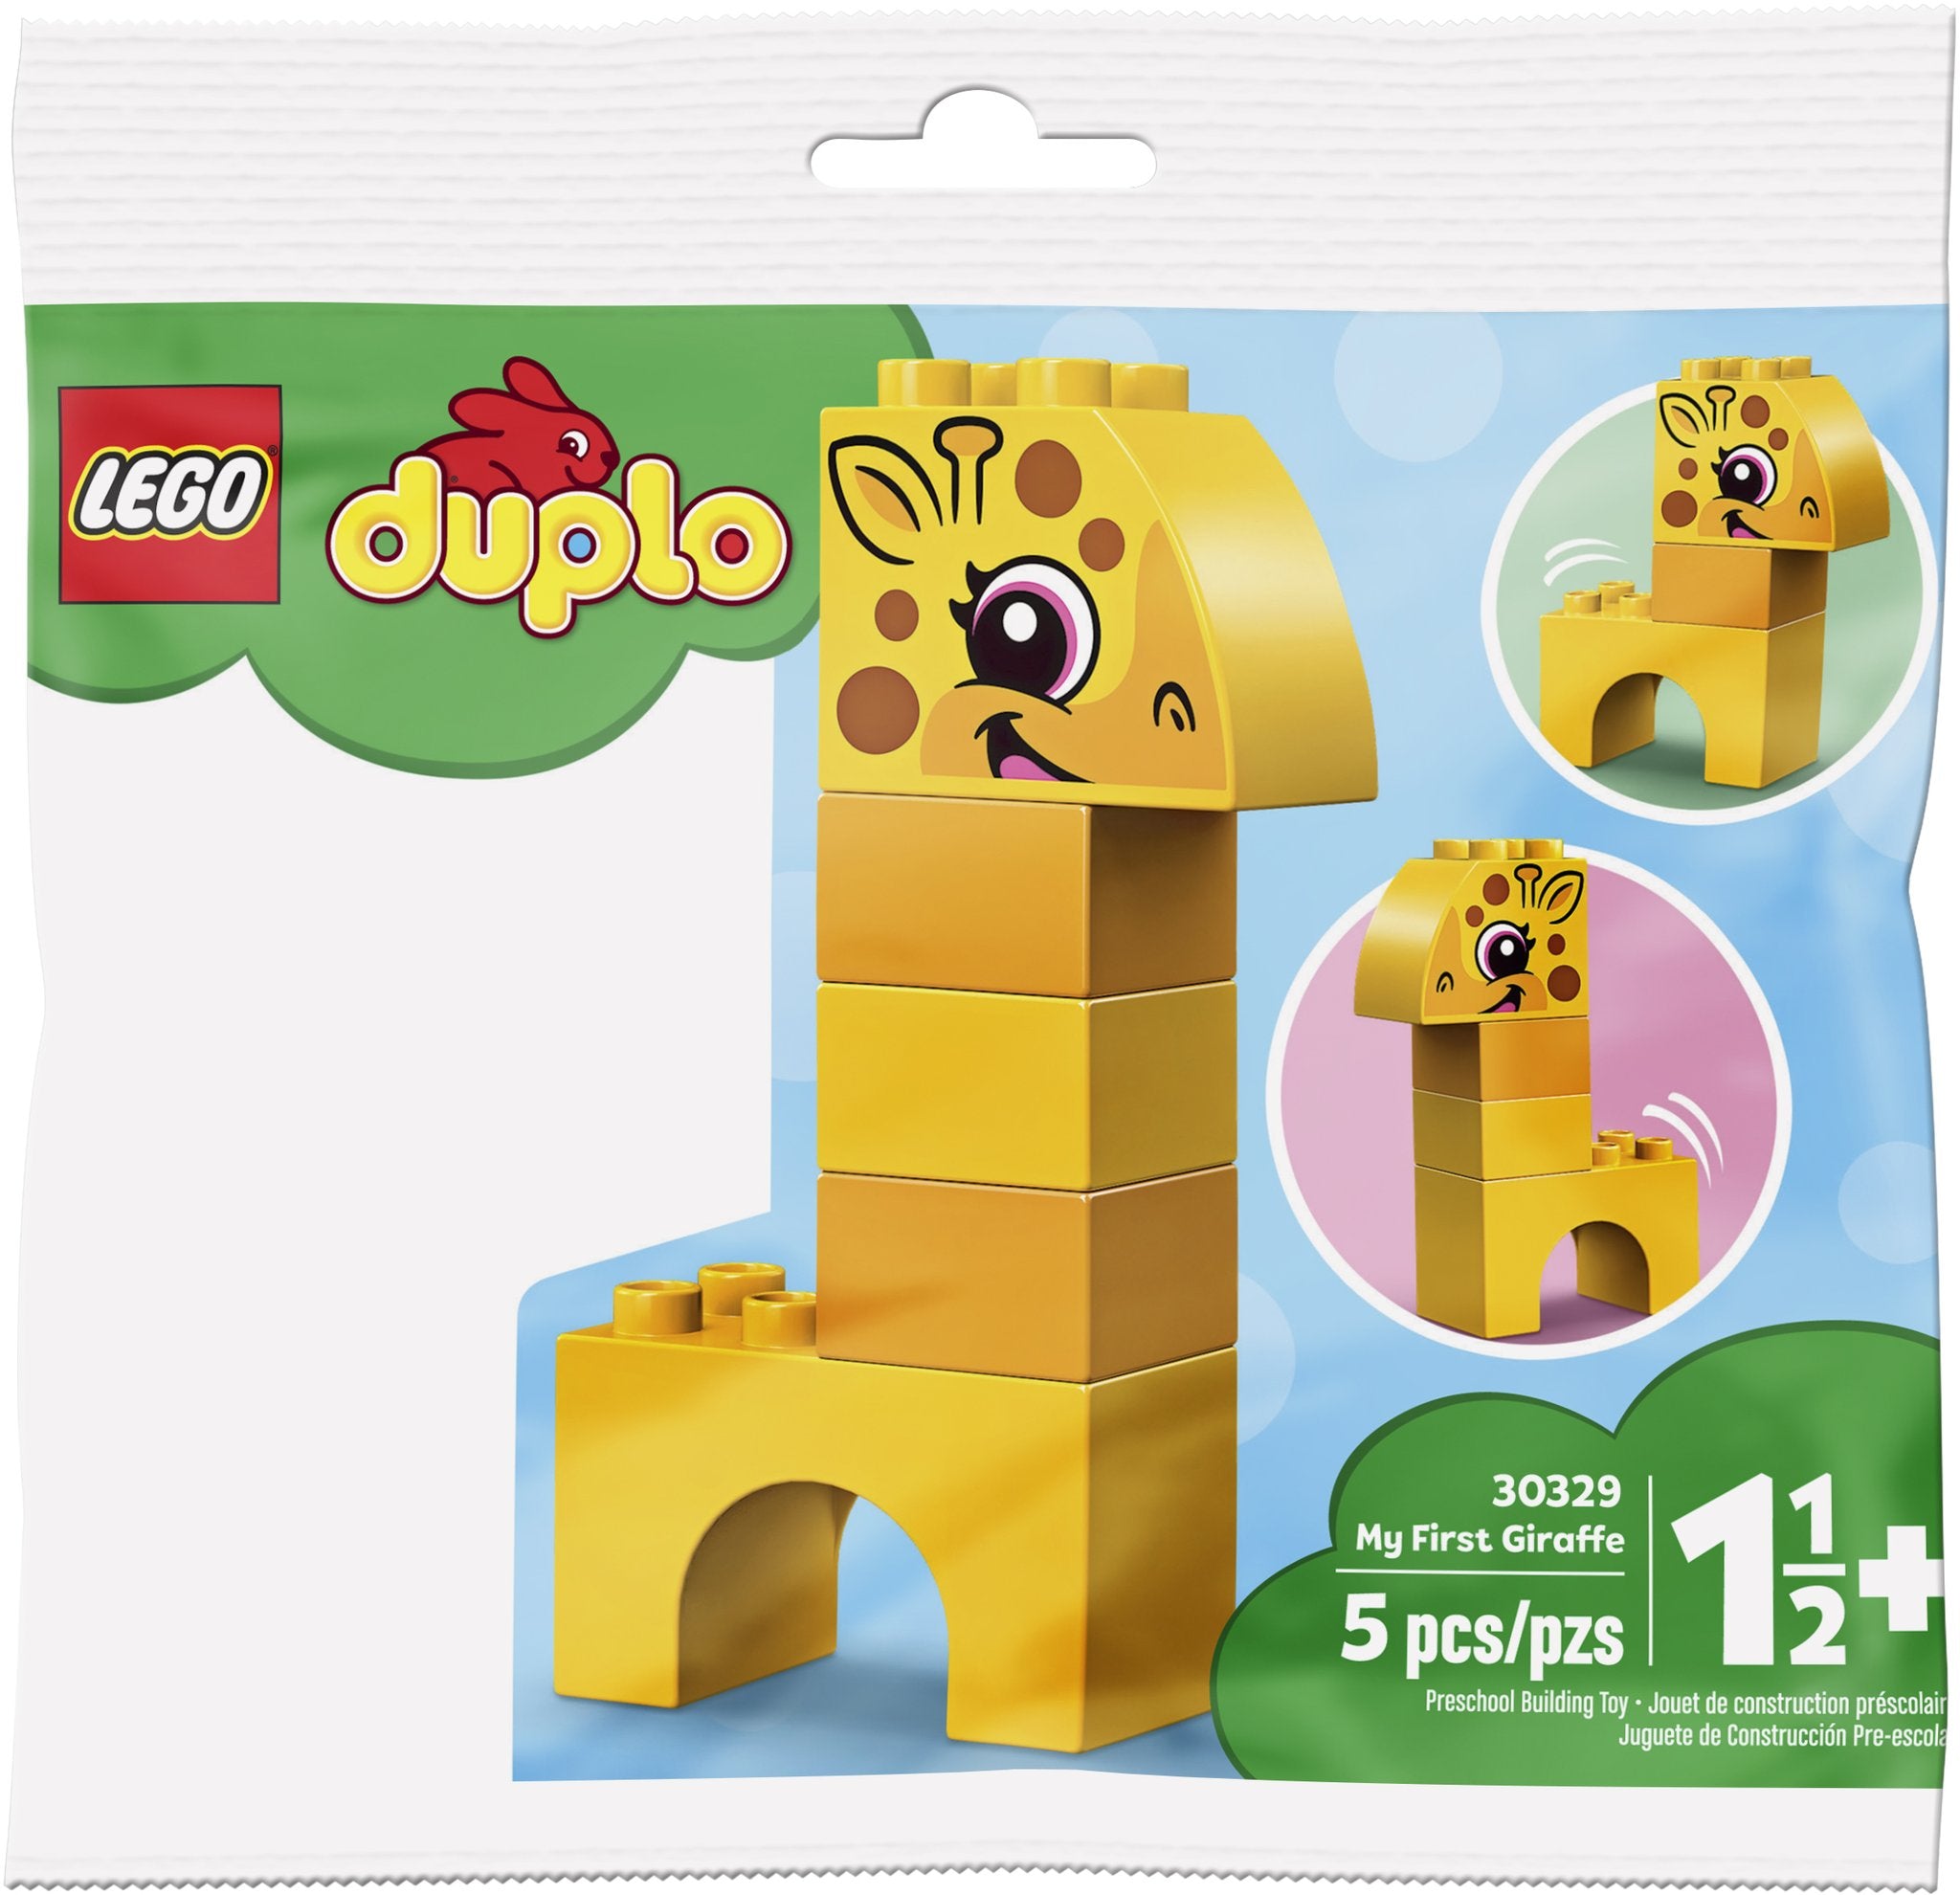 LEGO: DUPLO - My First Giraffe